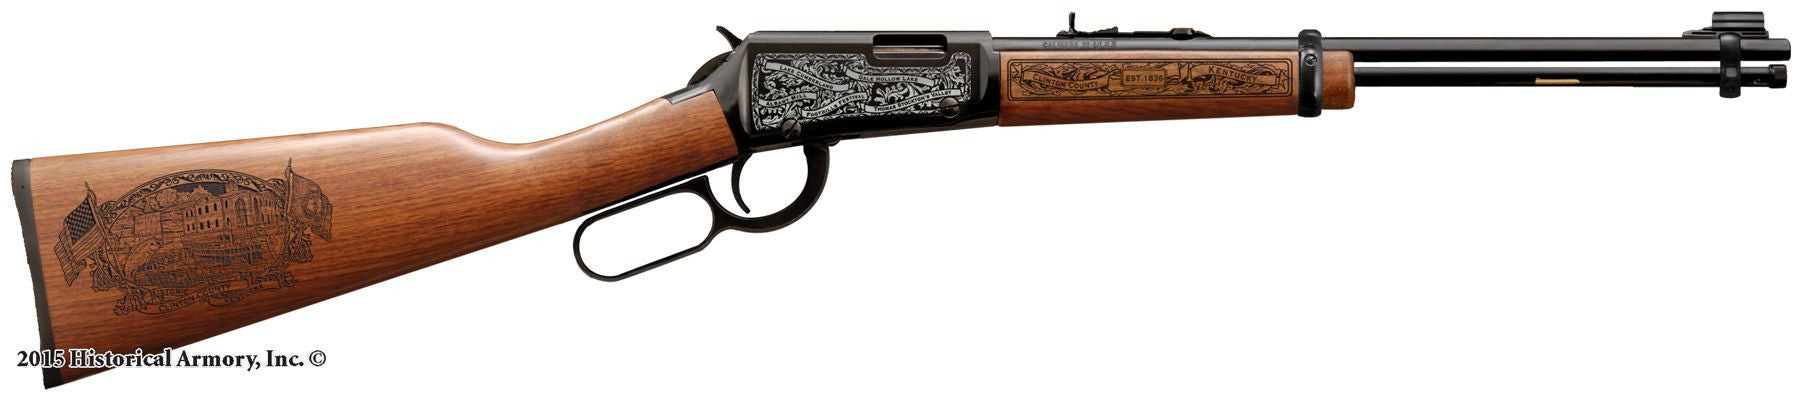 Clinton county kentucky engraved rifle H001